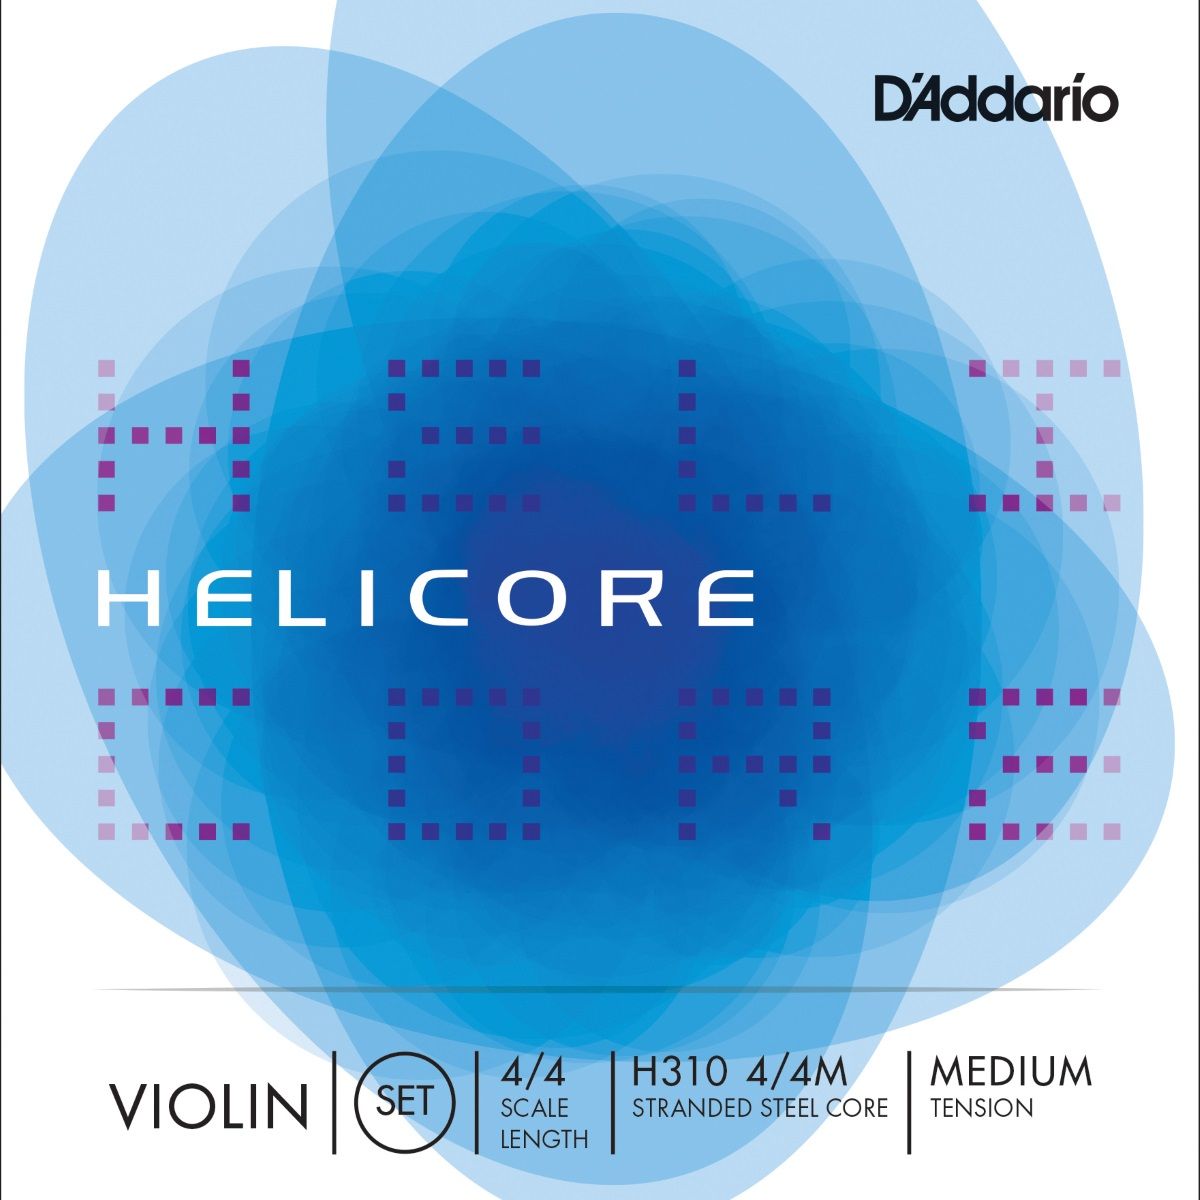 D'addario-Helicore-4-4-Violin-String-Set